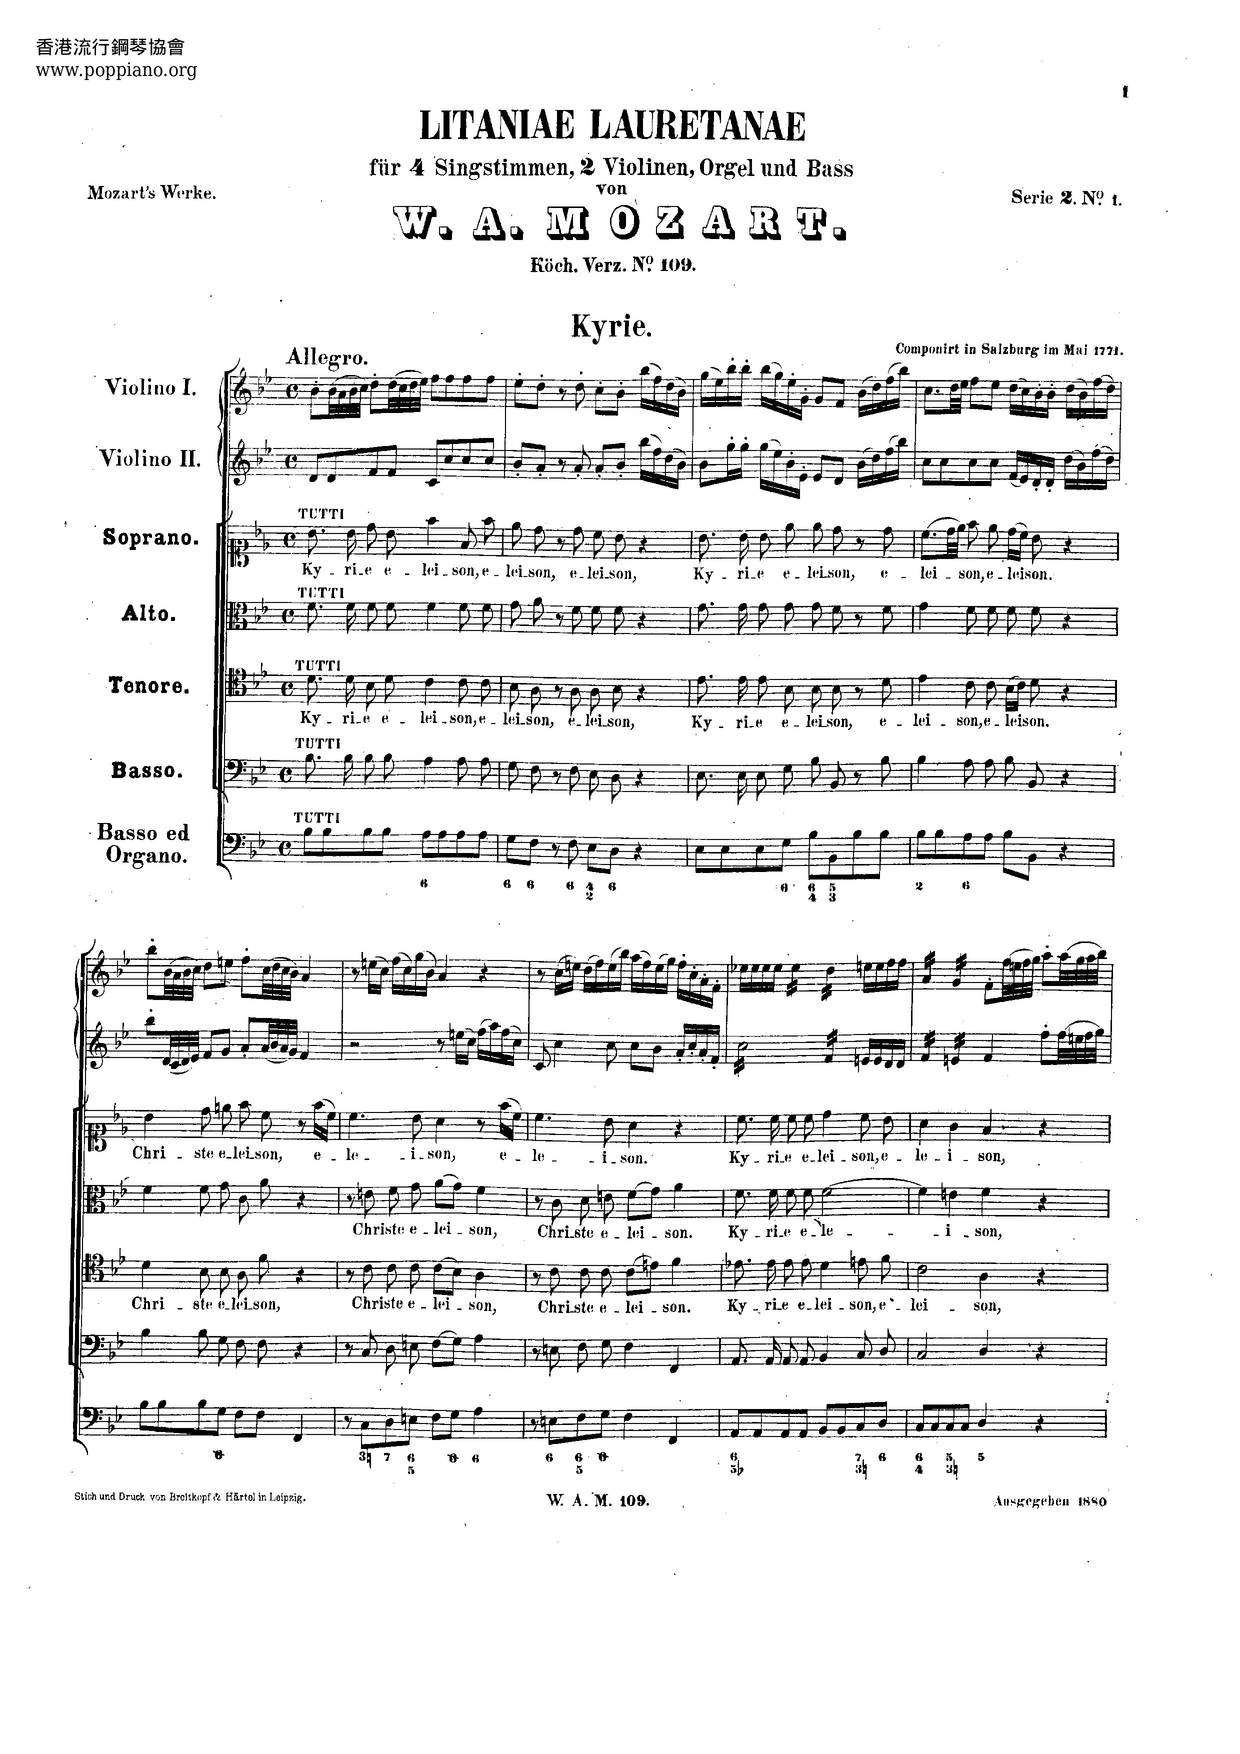 Litaniae Lauretanae, K. 109/74Eピアノ譜